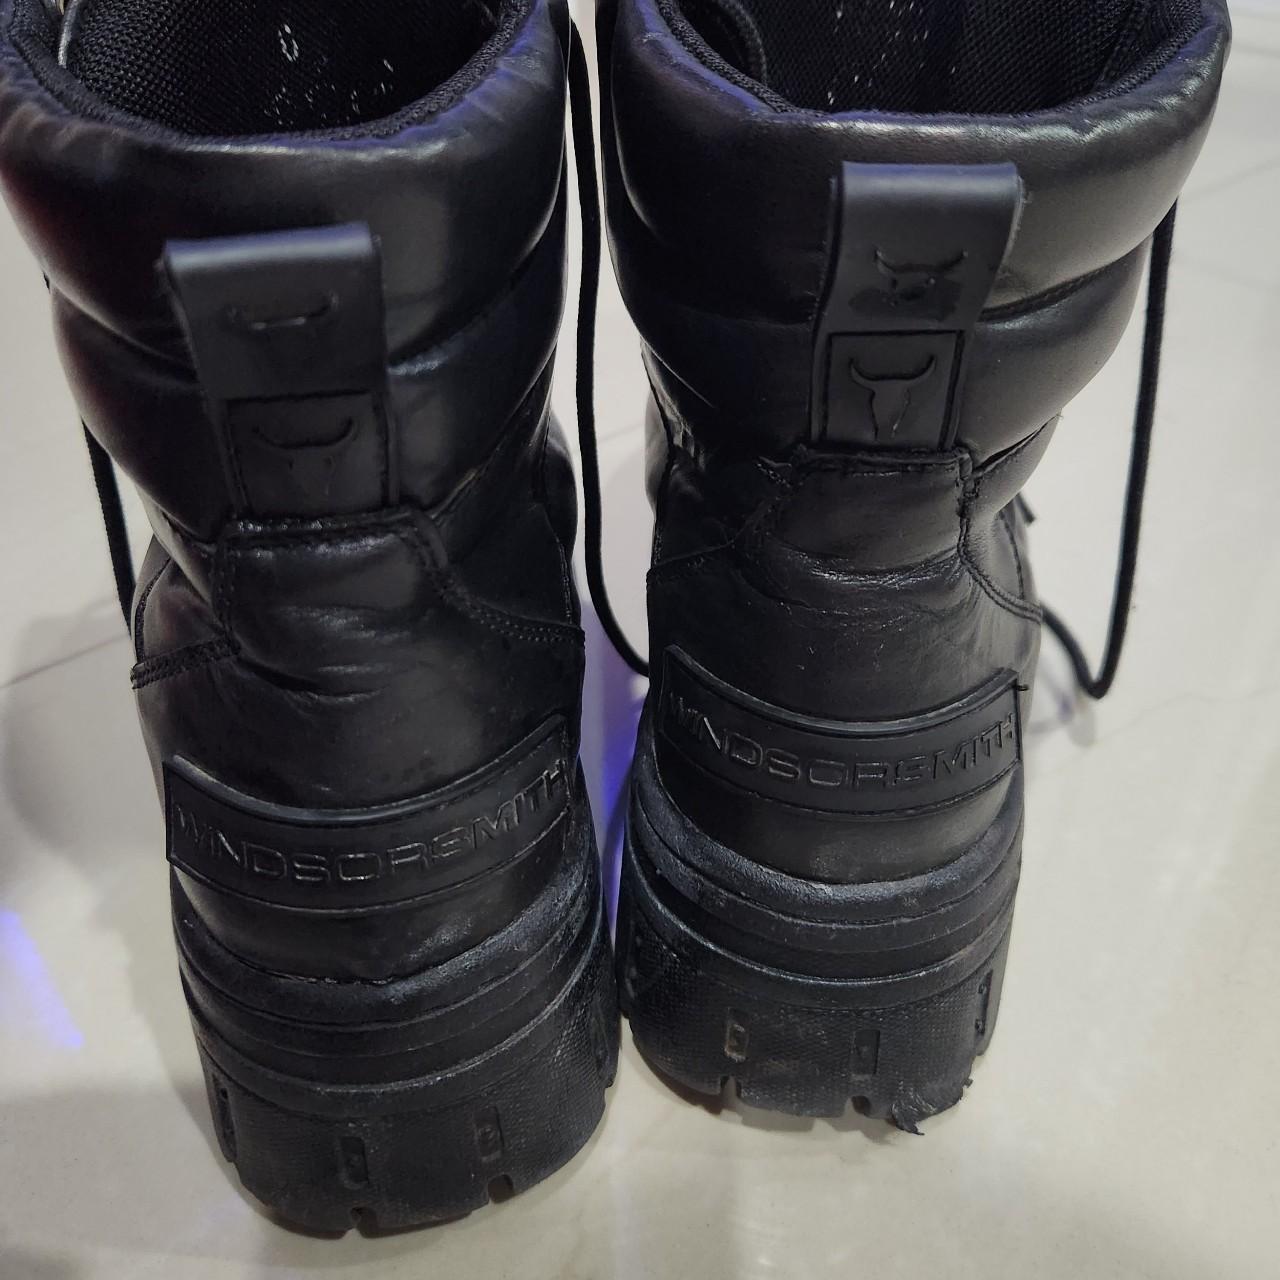 Windsor Smith Black Leather Platform Boots Size 8... - Depop